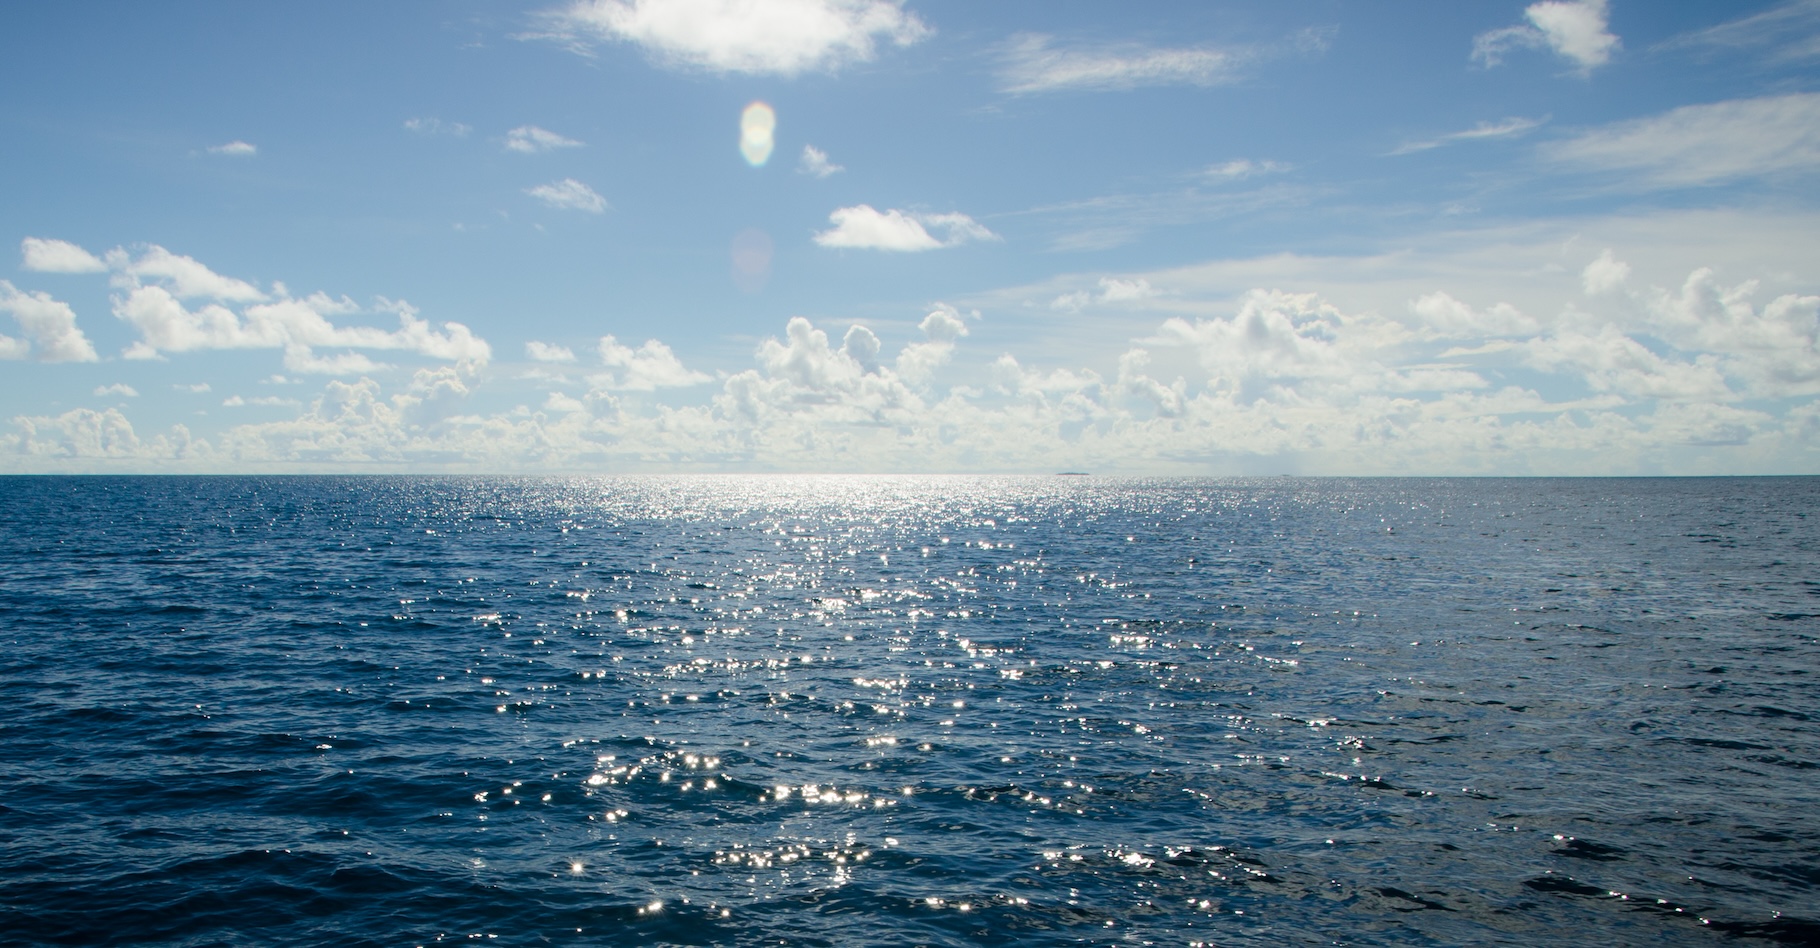 Comment l’eau s’évapore-t-elle des océans ? La réponse a des implications sur notre climat. Et elle dépend en partie de la structure de l’eau à l’interface avec l’air. Une équipe internationale de chercheurs montre aujourd’hui qu’elle n’est pas ce que les scientifiques pensaient jusqu’ici. © kevinlert, Adobe Stock